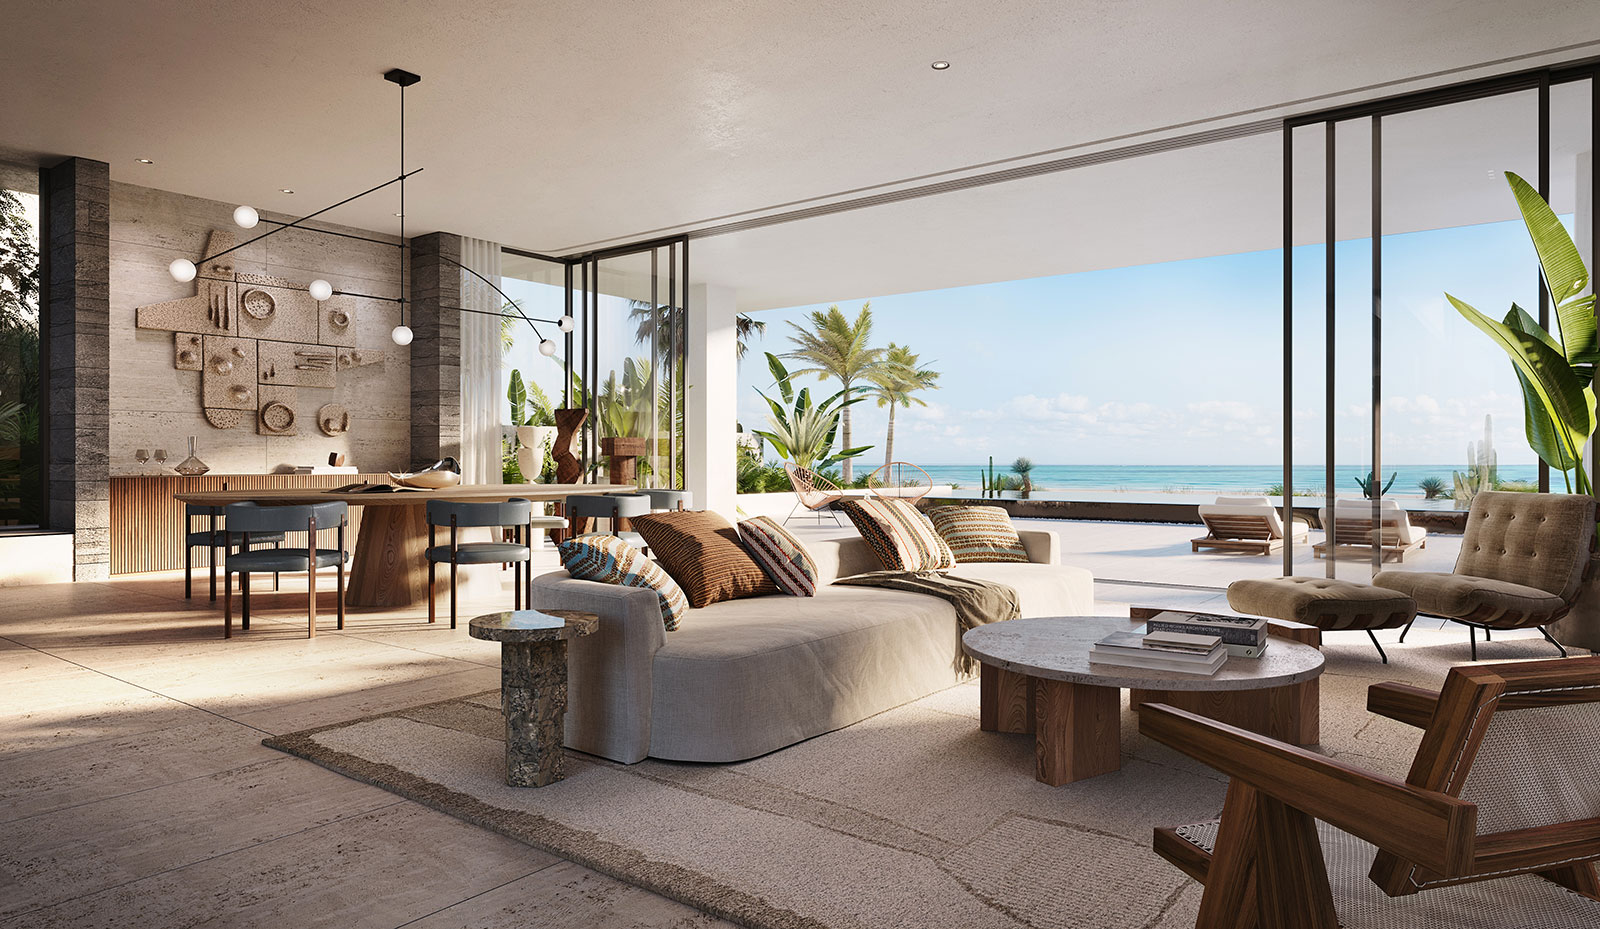 An open-plan lounge in warm tones, overlooking the ocean. 